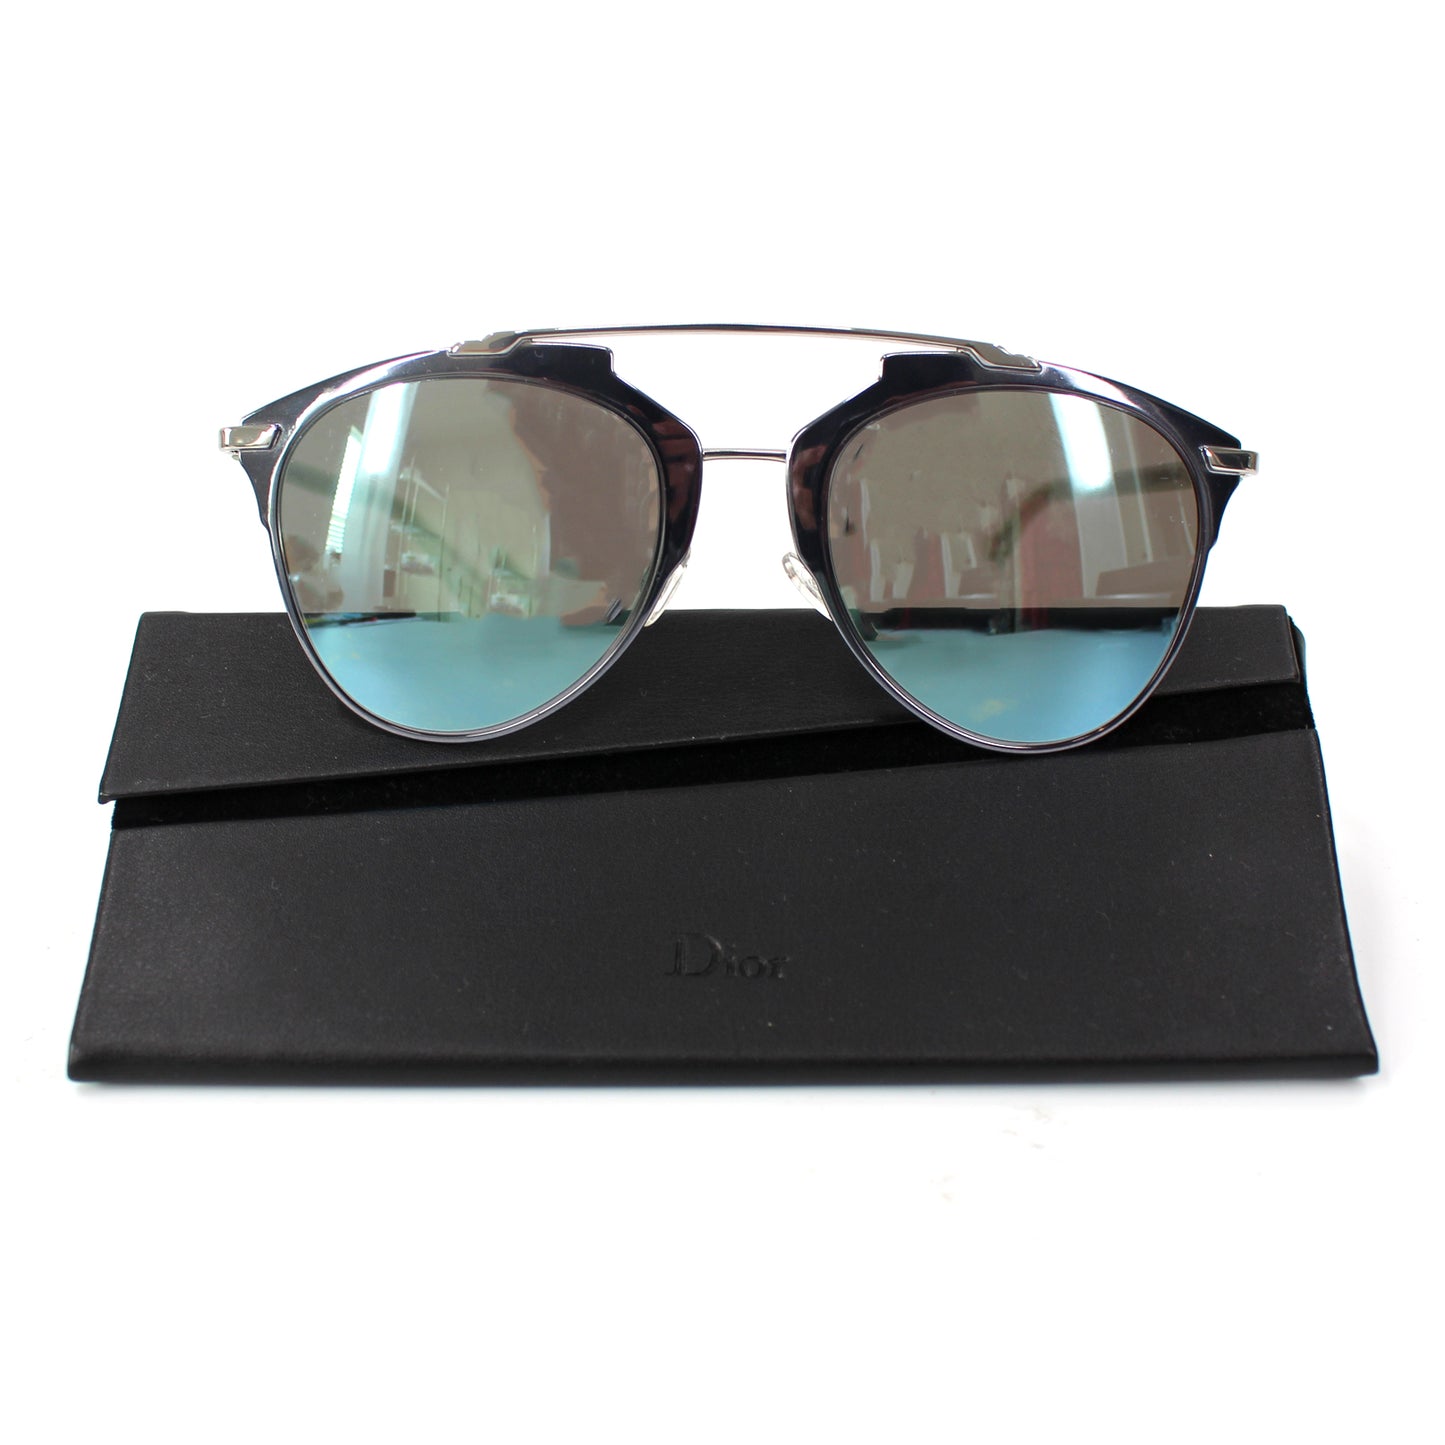 Dior Reflective Aviator Sunglasses